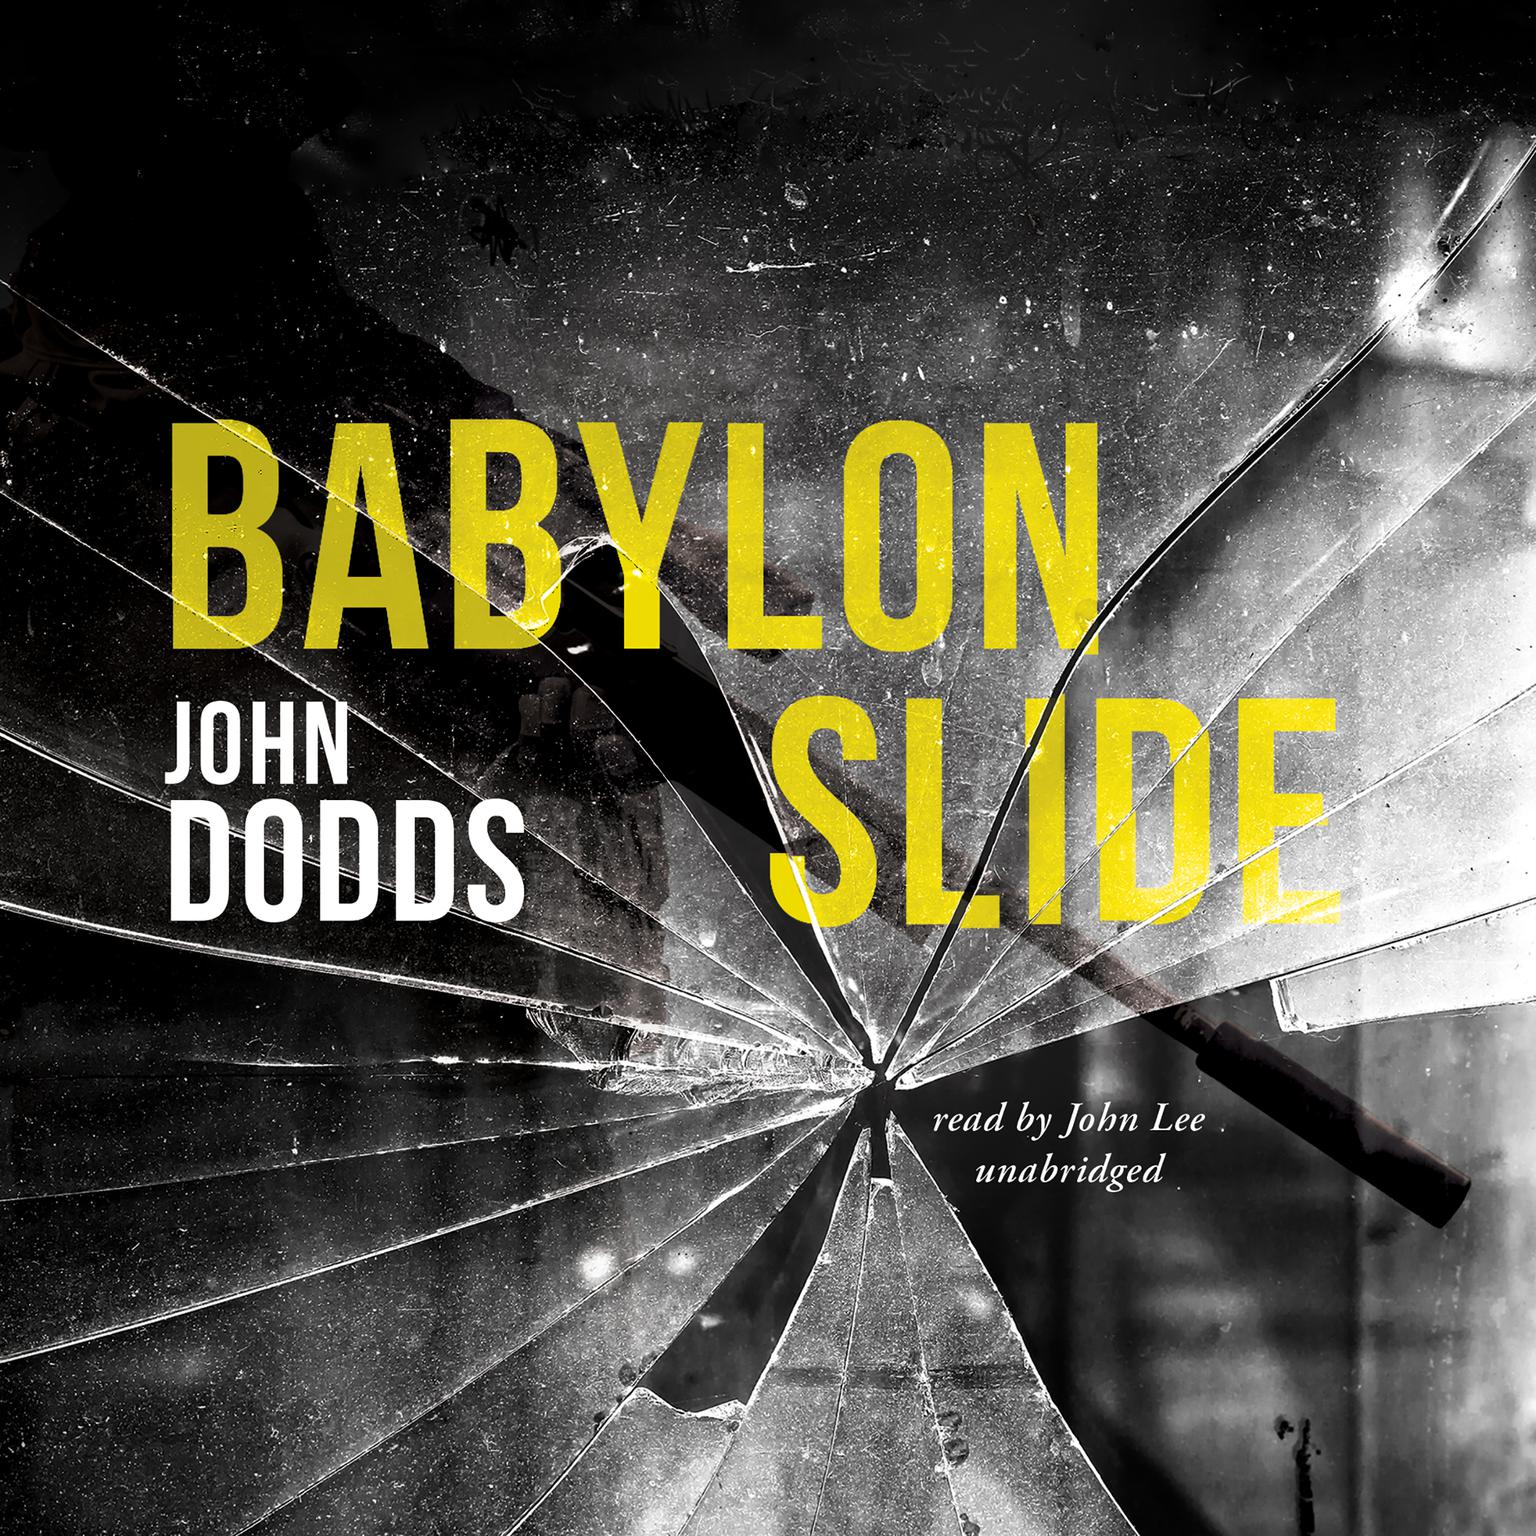 Babylon Slide Audiobook, by John Dodds